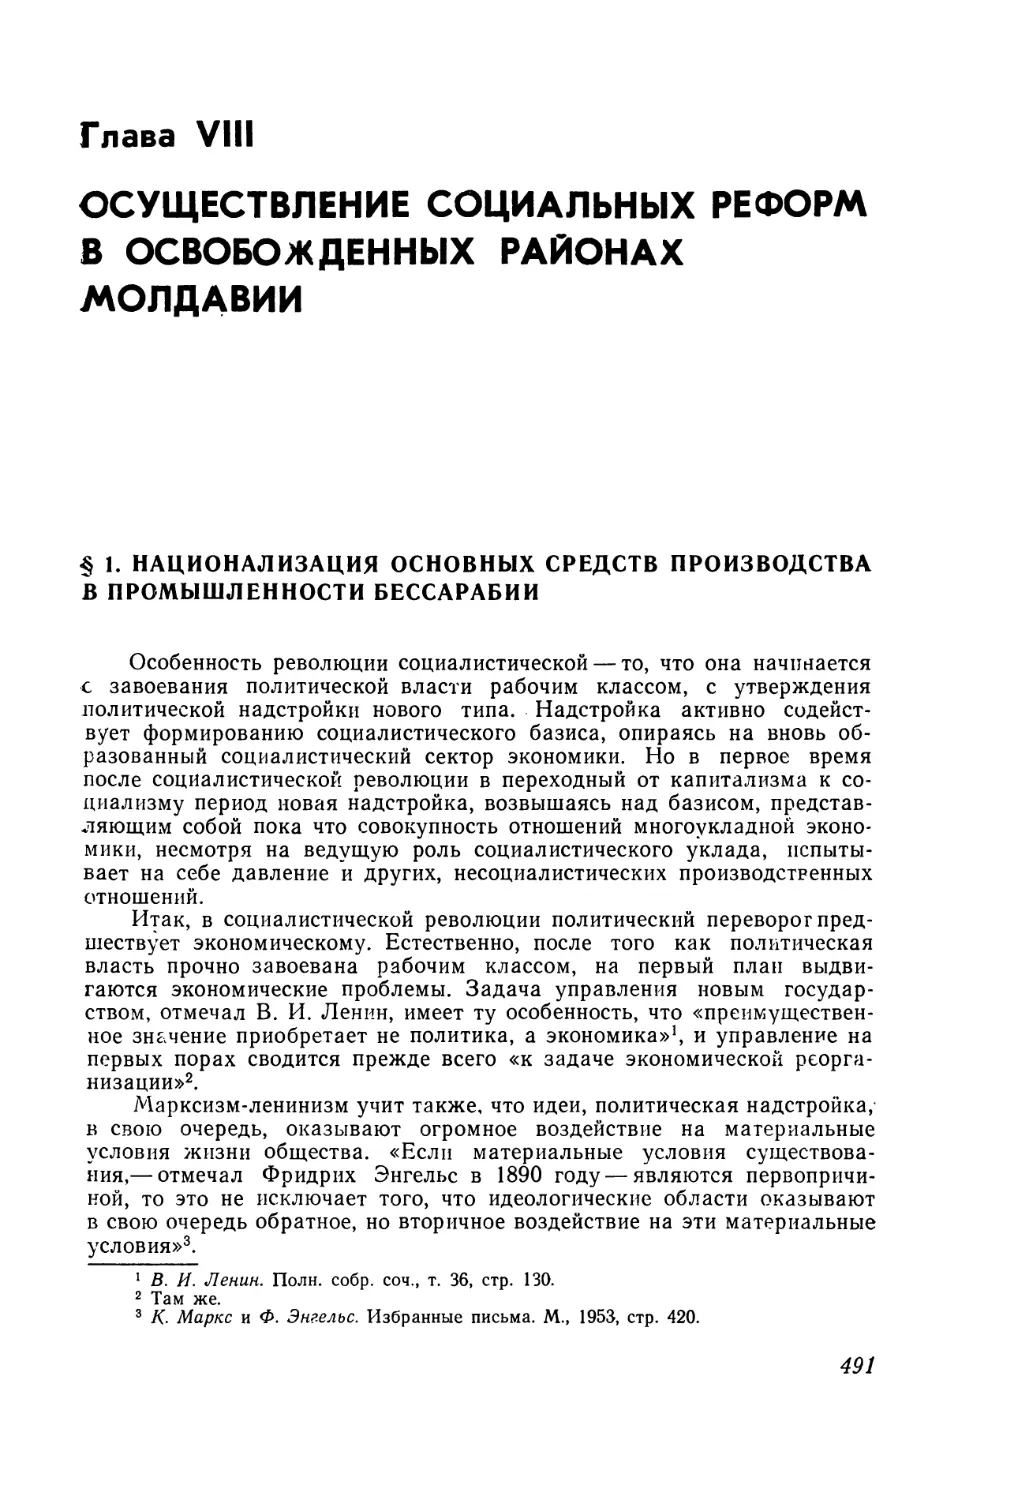 Глава VIII. Осуществление социальных реформ в освобожденных районах Молдавии